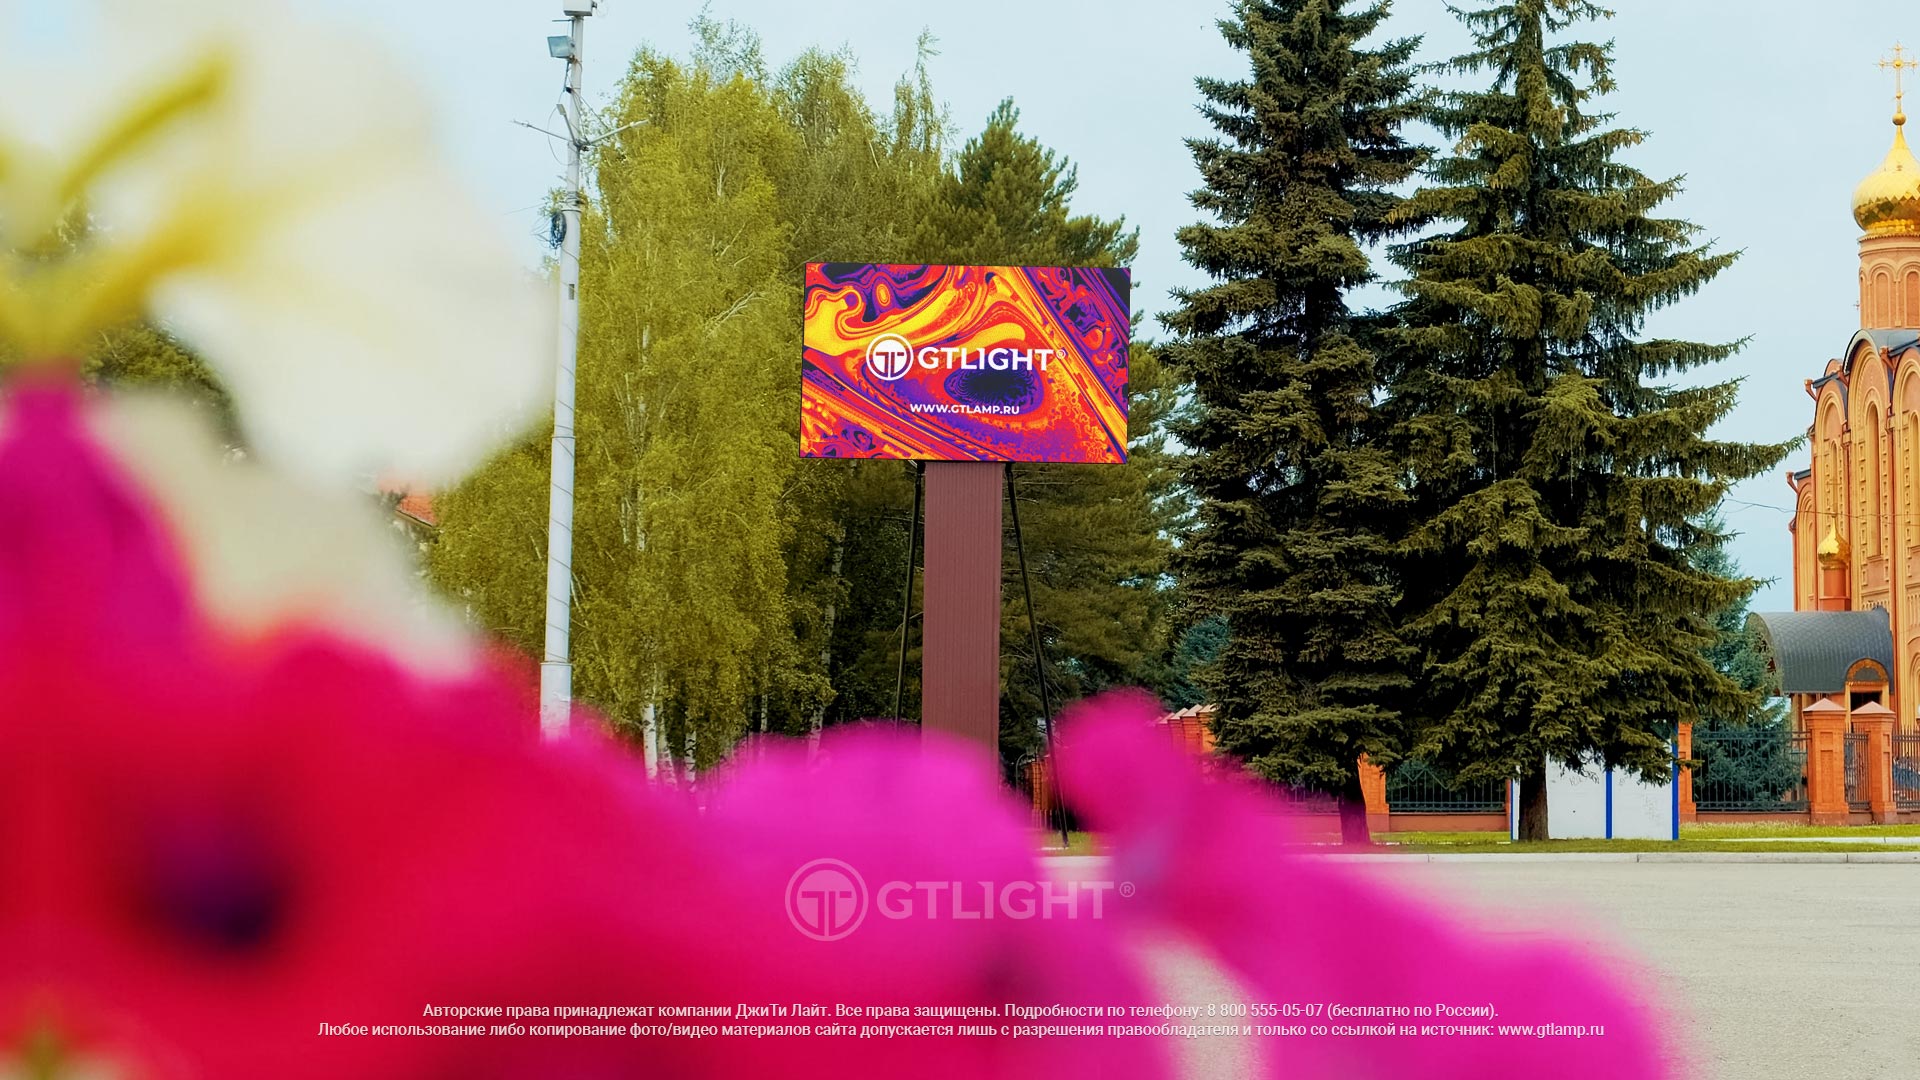 Светодиодный уличный экран для рекламы, Осинники, рекламное агентство «Площадь», фото 4